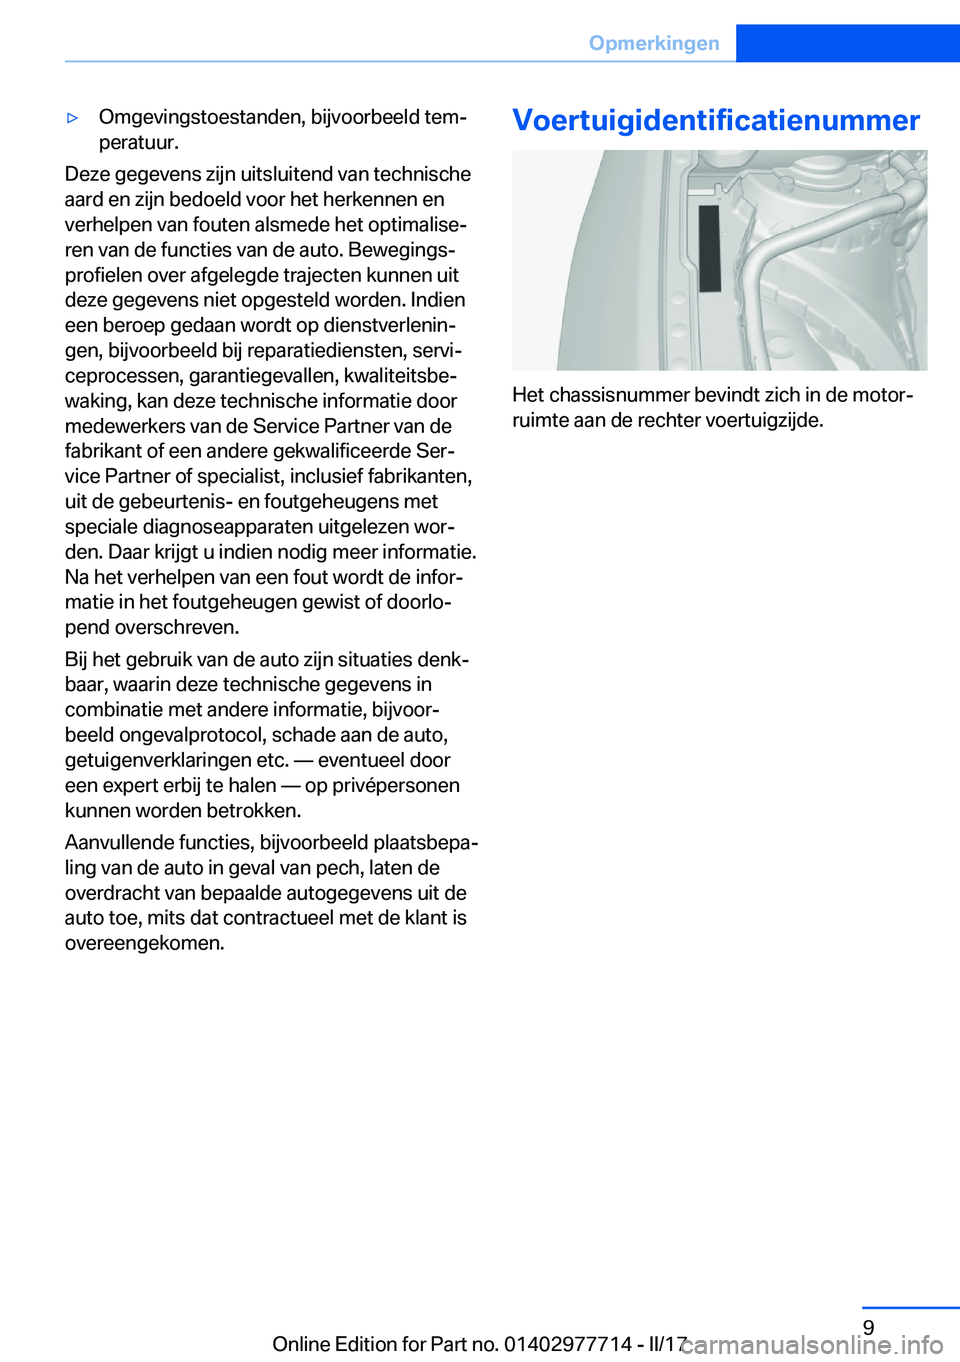 BMW 2 SERIES COUPE 2017  Instructieboekjes (in Dutch) 'y�O�m�g�e�v�i�n�g�s�t�o�e�s�t�a�n�d�e�n�,� �b�i�j�v�o�o�r�b�e�e�l�d� �t�e�mj�p�e�r�a�t�u�u�r�.
�D�e�z�e� �g�e�g�e�v�e�n�s� �z�i�j�n� �u�i�t�s�l�u�i�t�e�n�d� �v�a�n� �t�e�c�h�n�i�s�c�h�e�a�a�r�d�